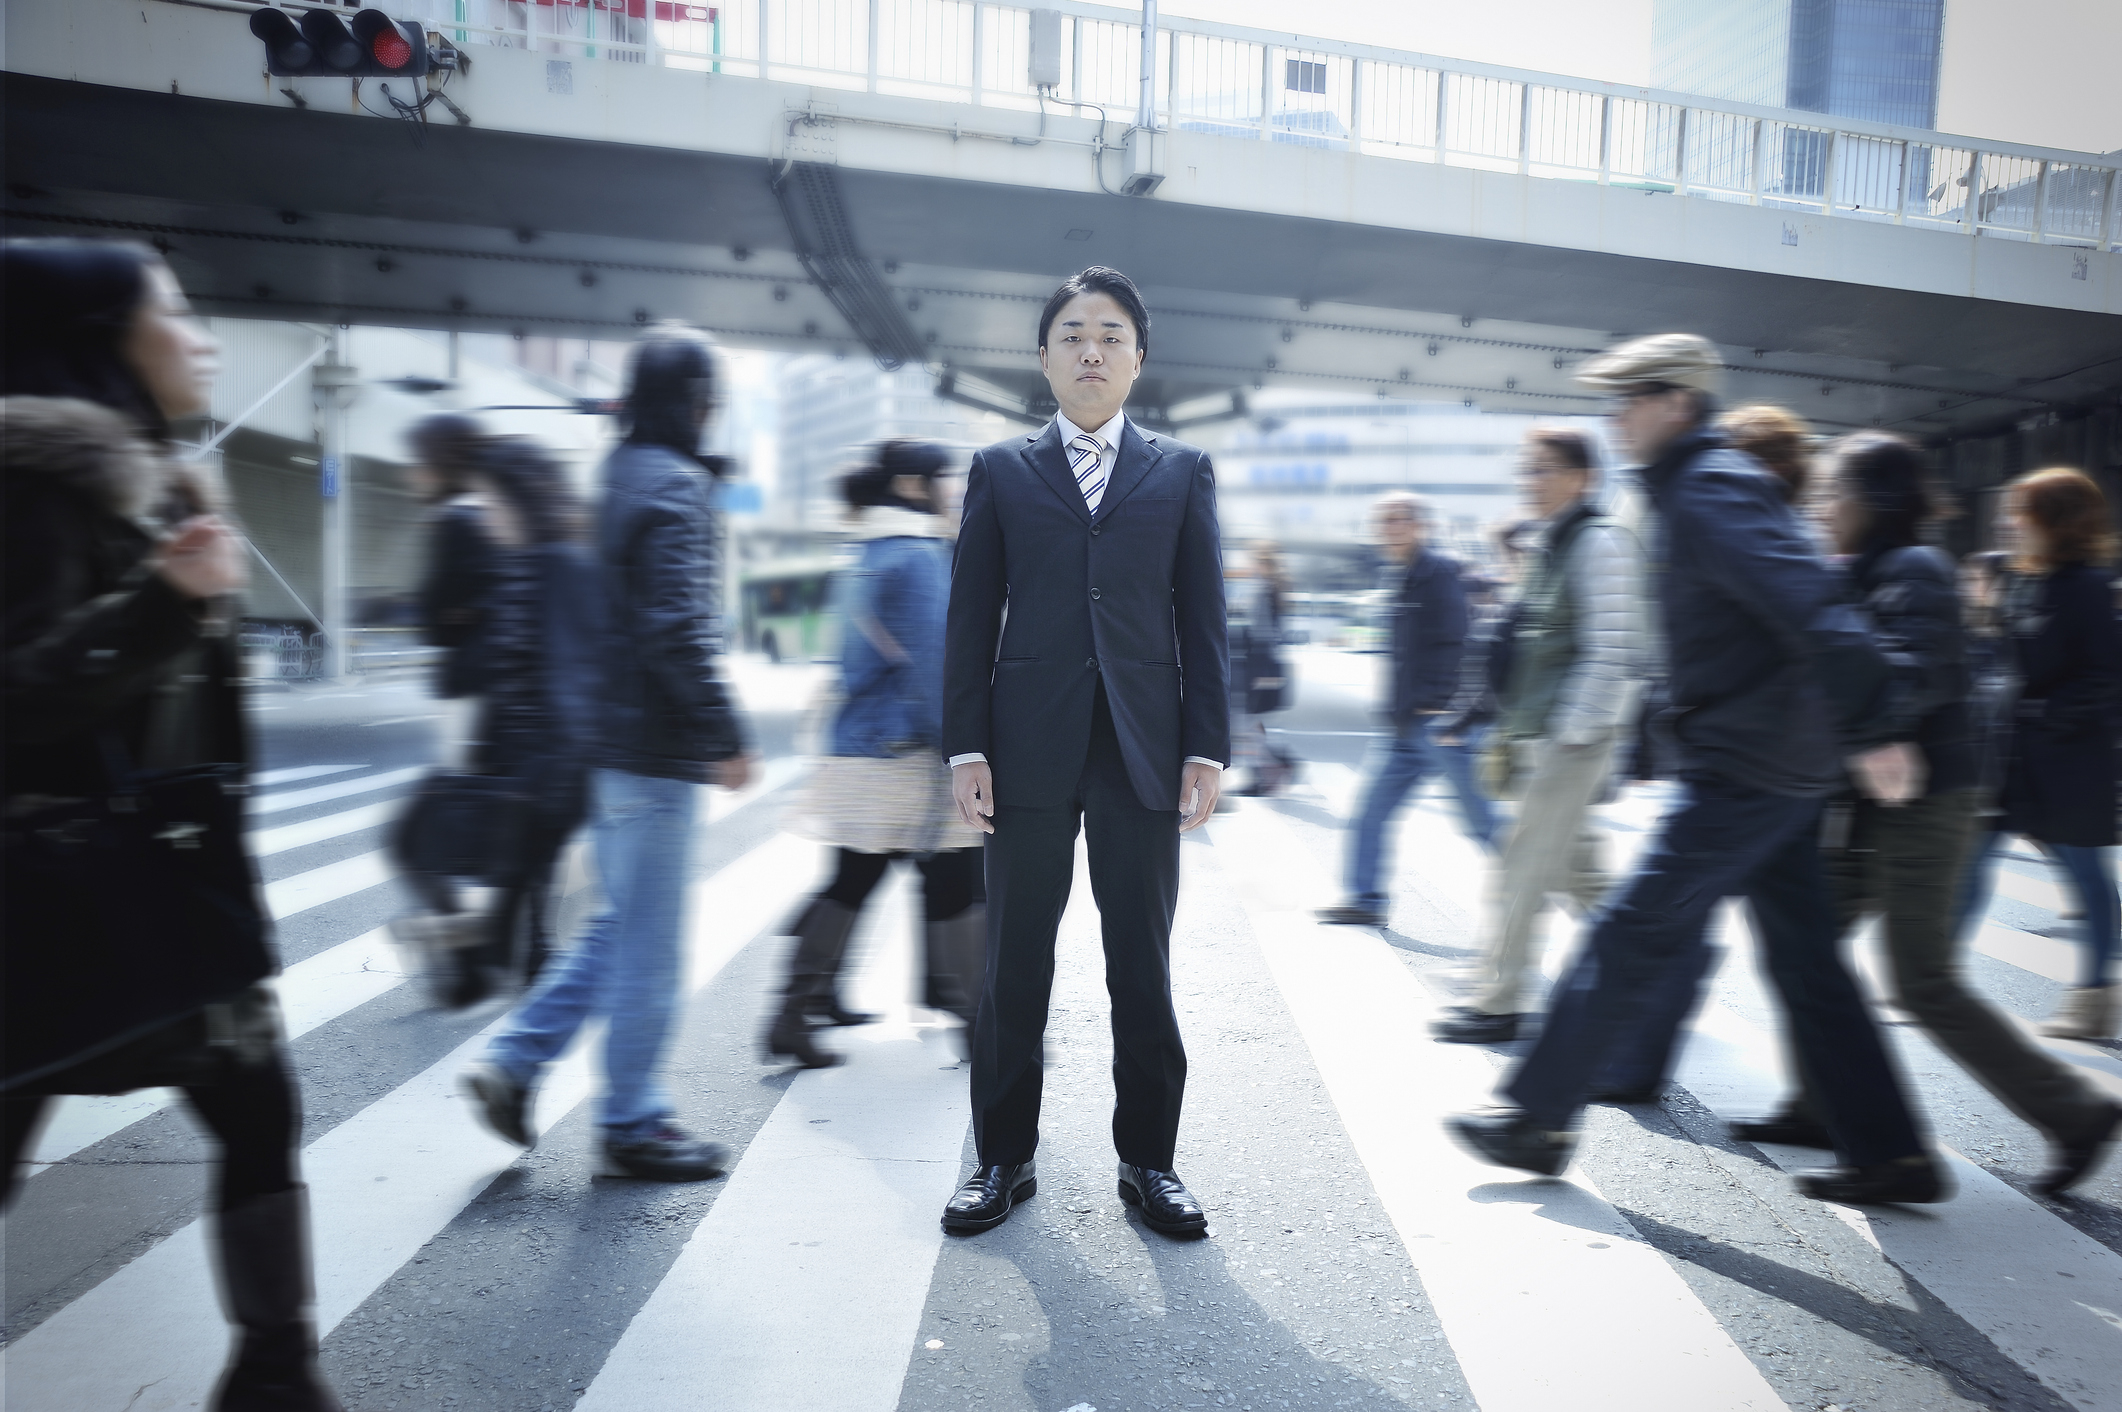 Man in suit standing still while blurred figures walk around him